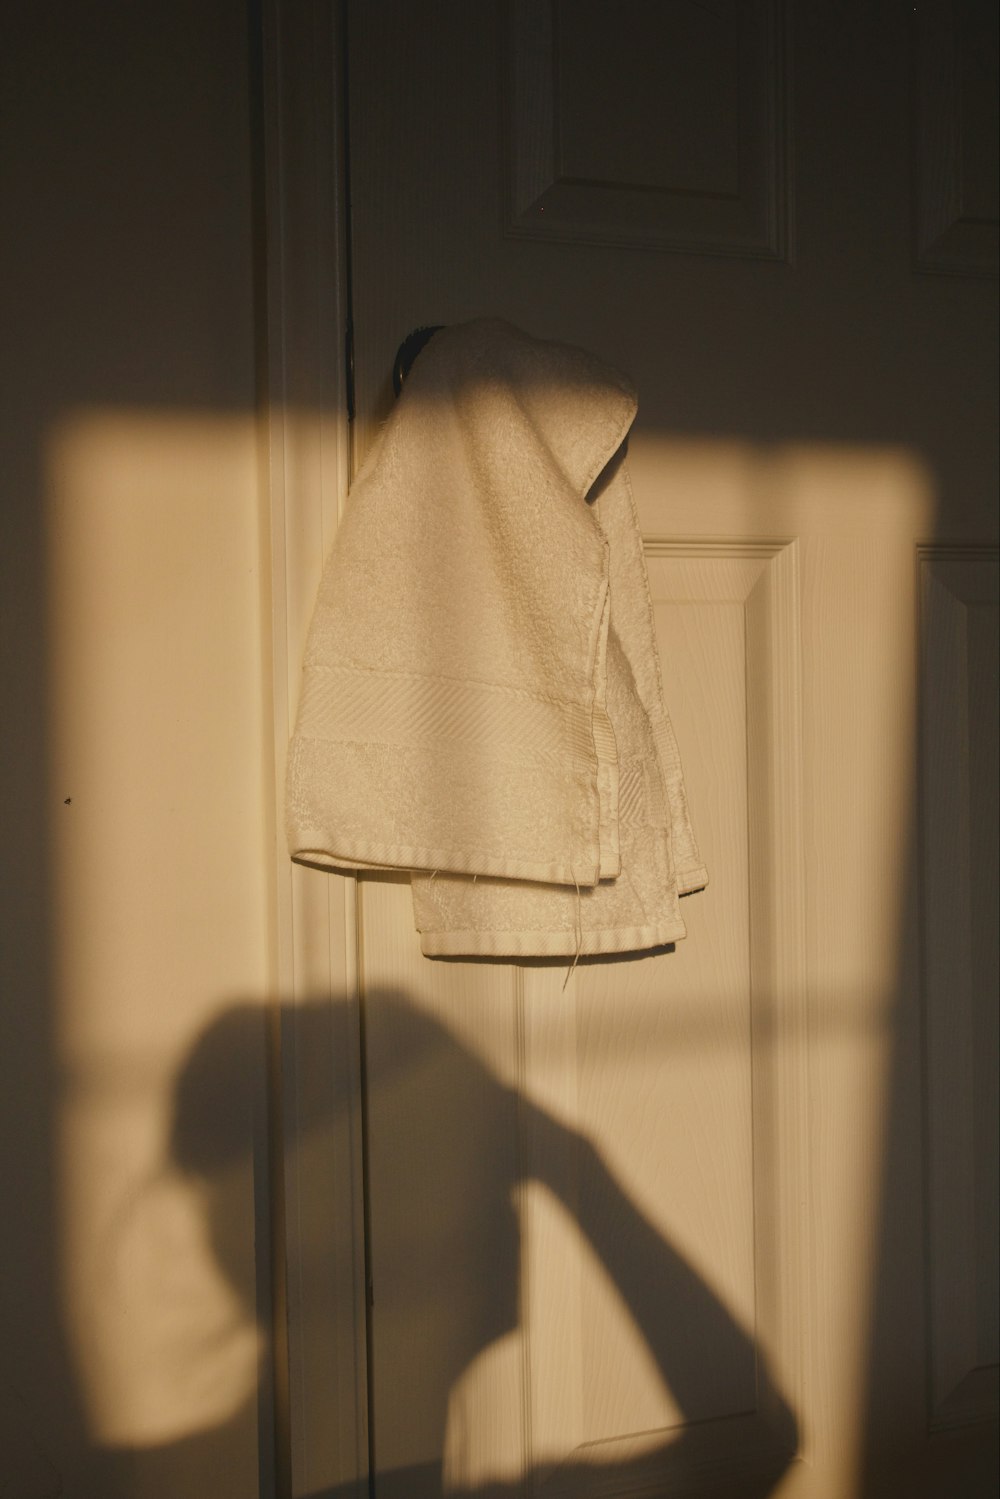 a sombra da mão de uma pessoa em uma porta